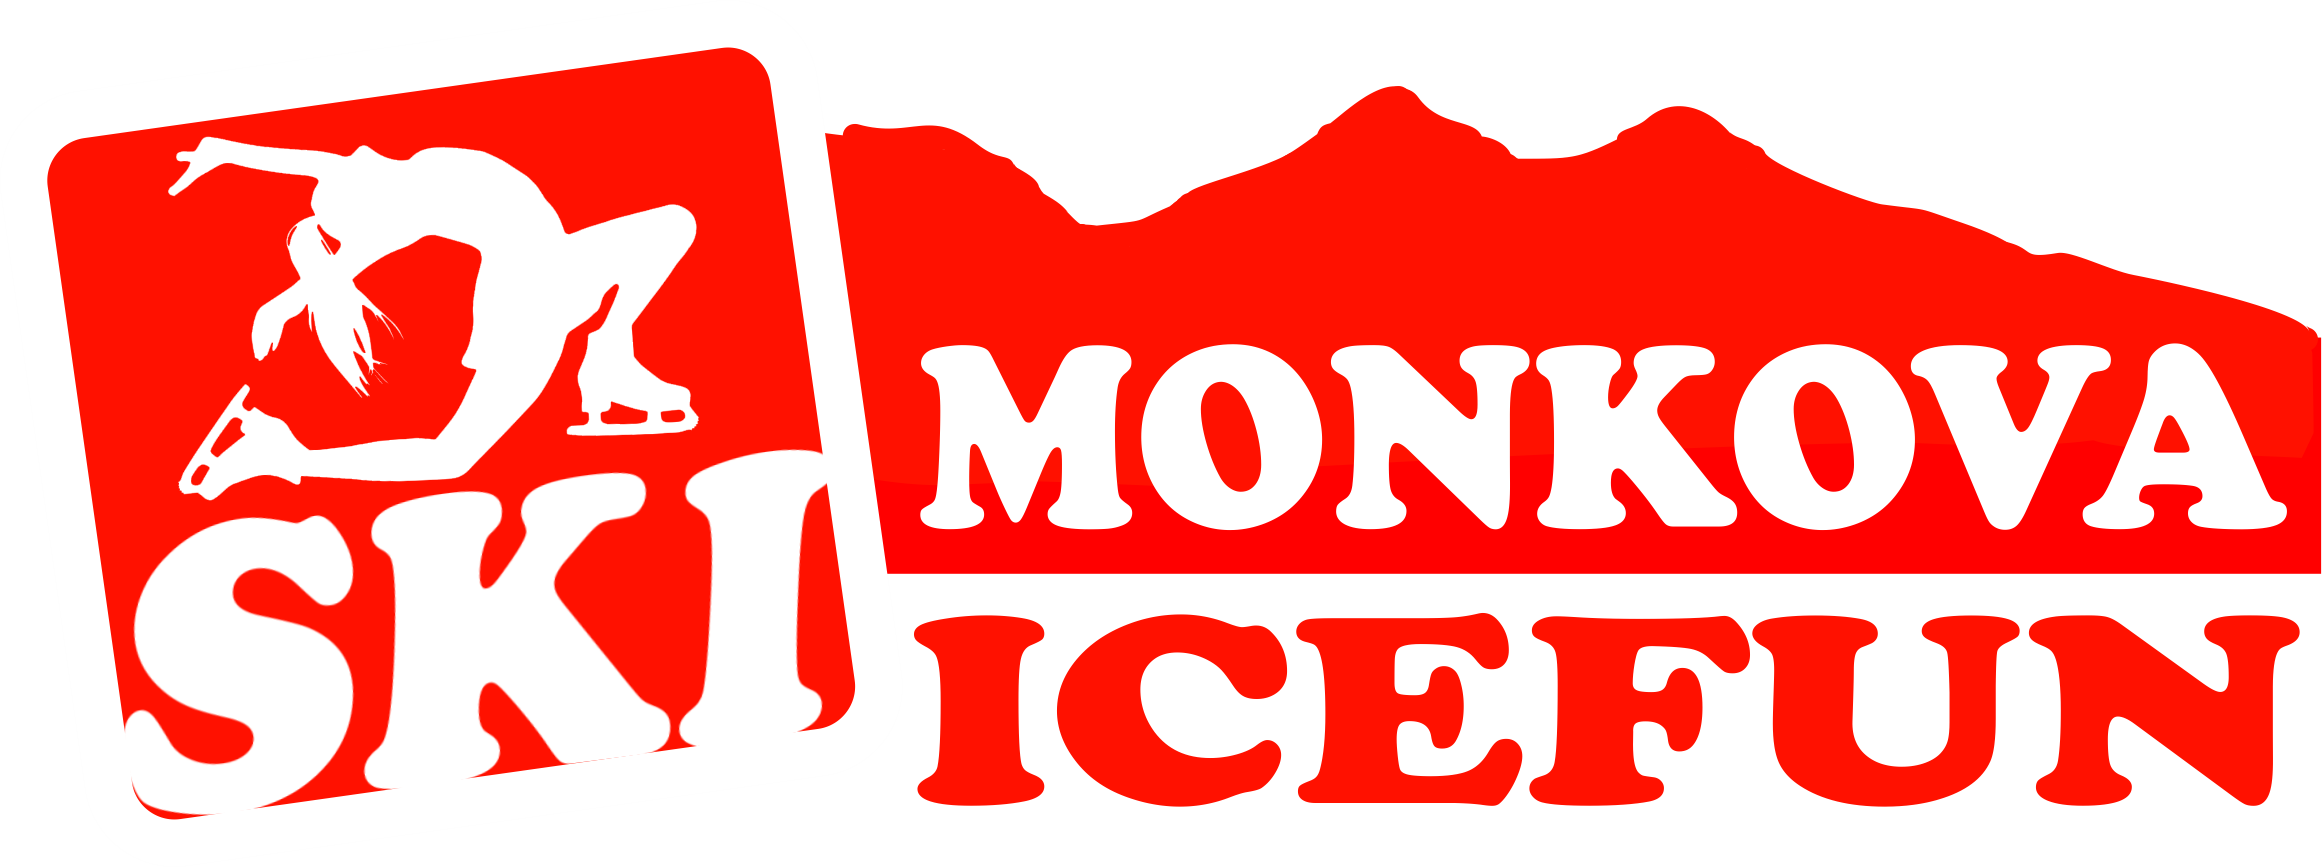 SKI MONKOVA ICEFUN - ZÁBAVA NA ĽADE